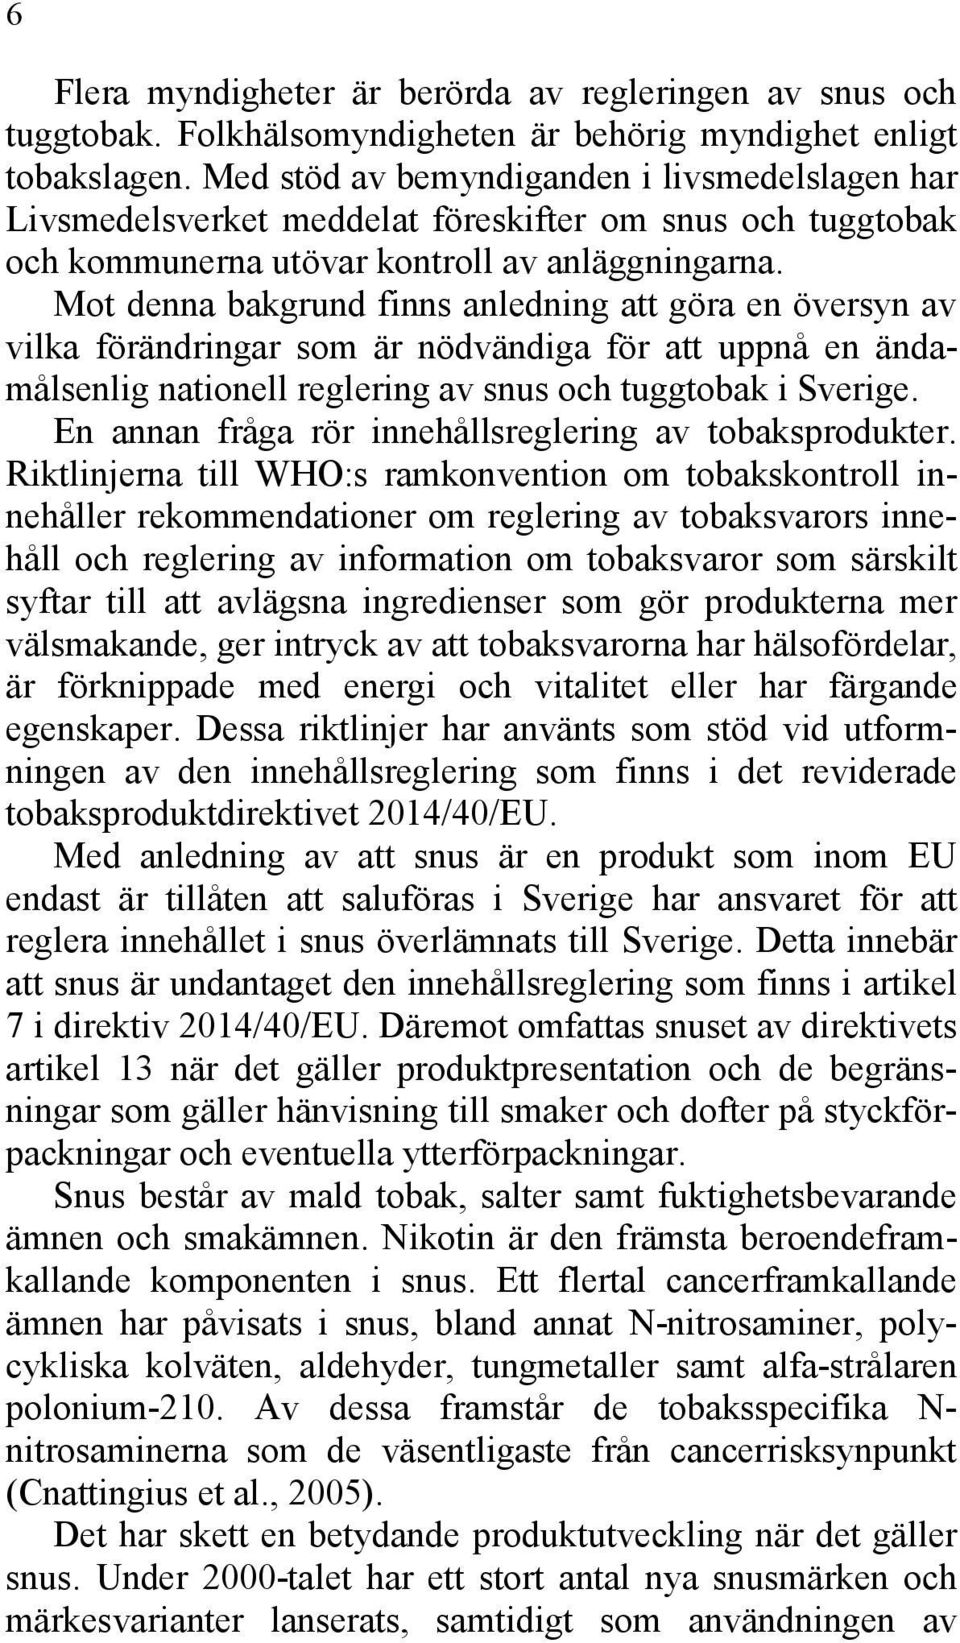 Mot denna bakgrund finns anledning att göra en översyn av vilka förändringar som är nödvändiga för att uppnå en ändamålsenlig nationell reglering av snus och tuggtobak i Sverige.